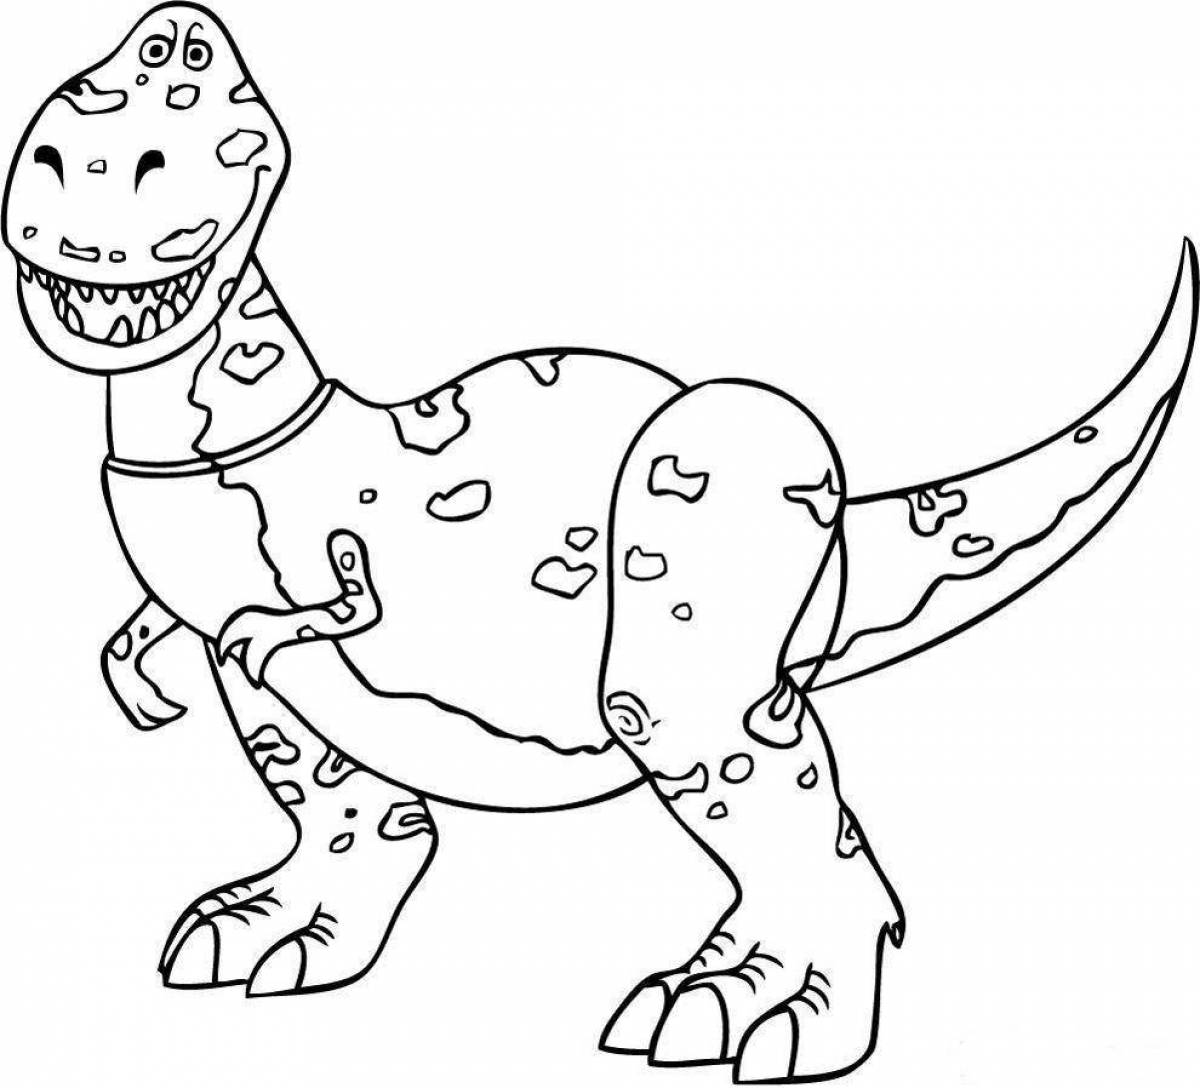 Great tarbosaurus coloring book for kids